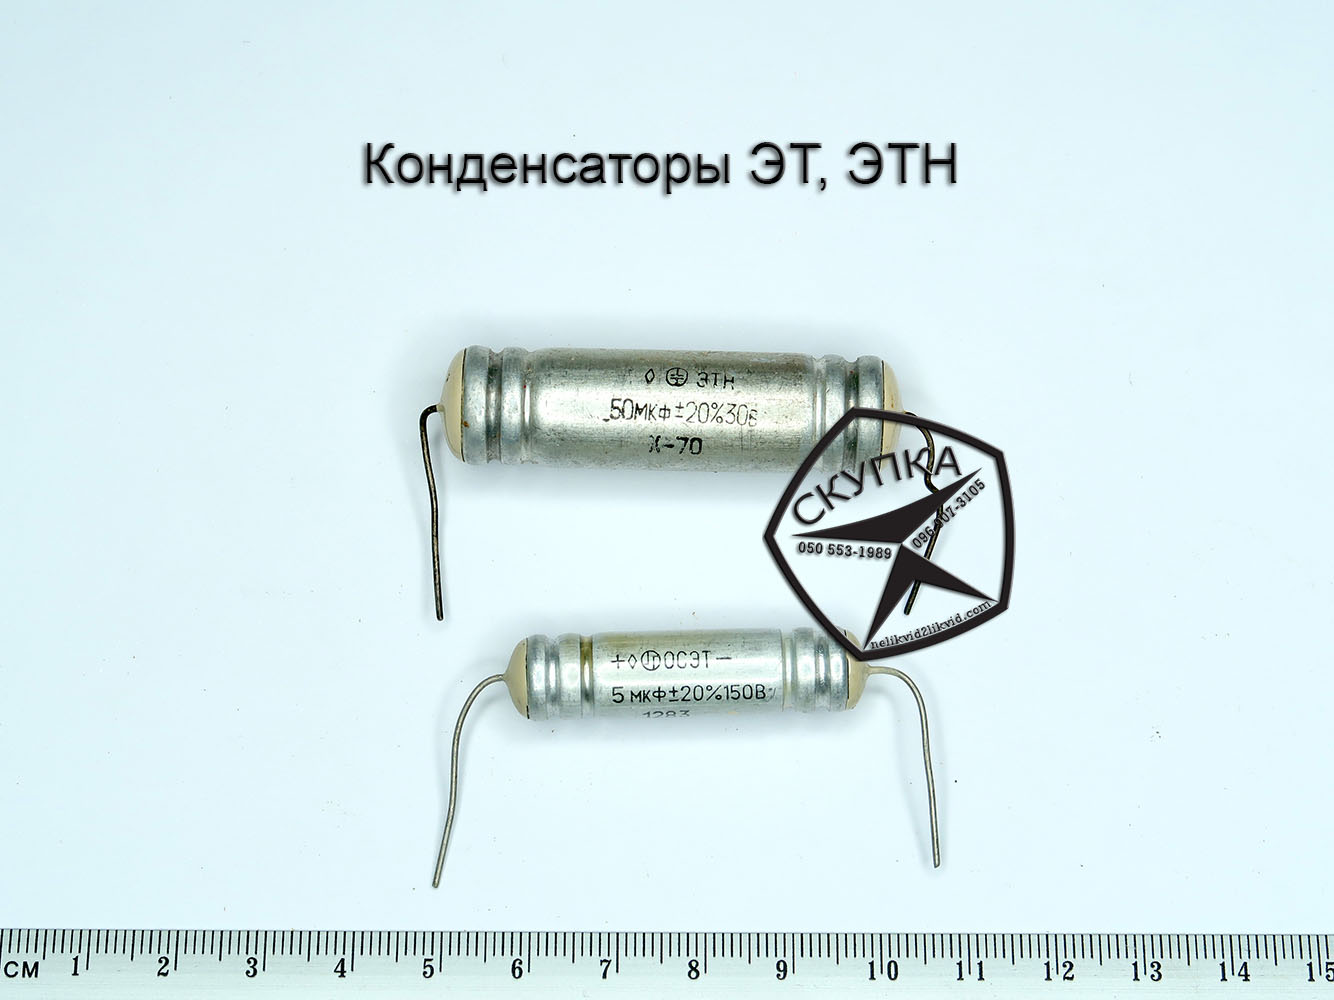 Куплю конденсаторы к53-1 Харьков